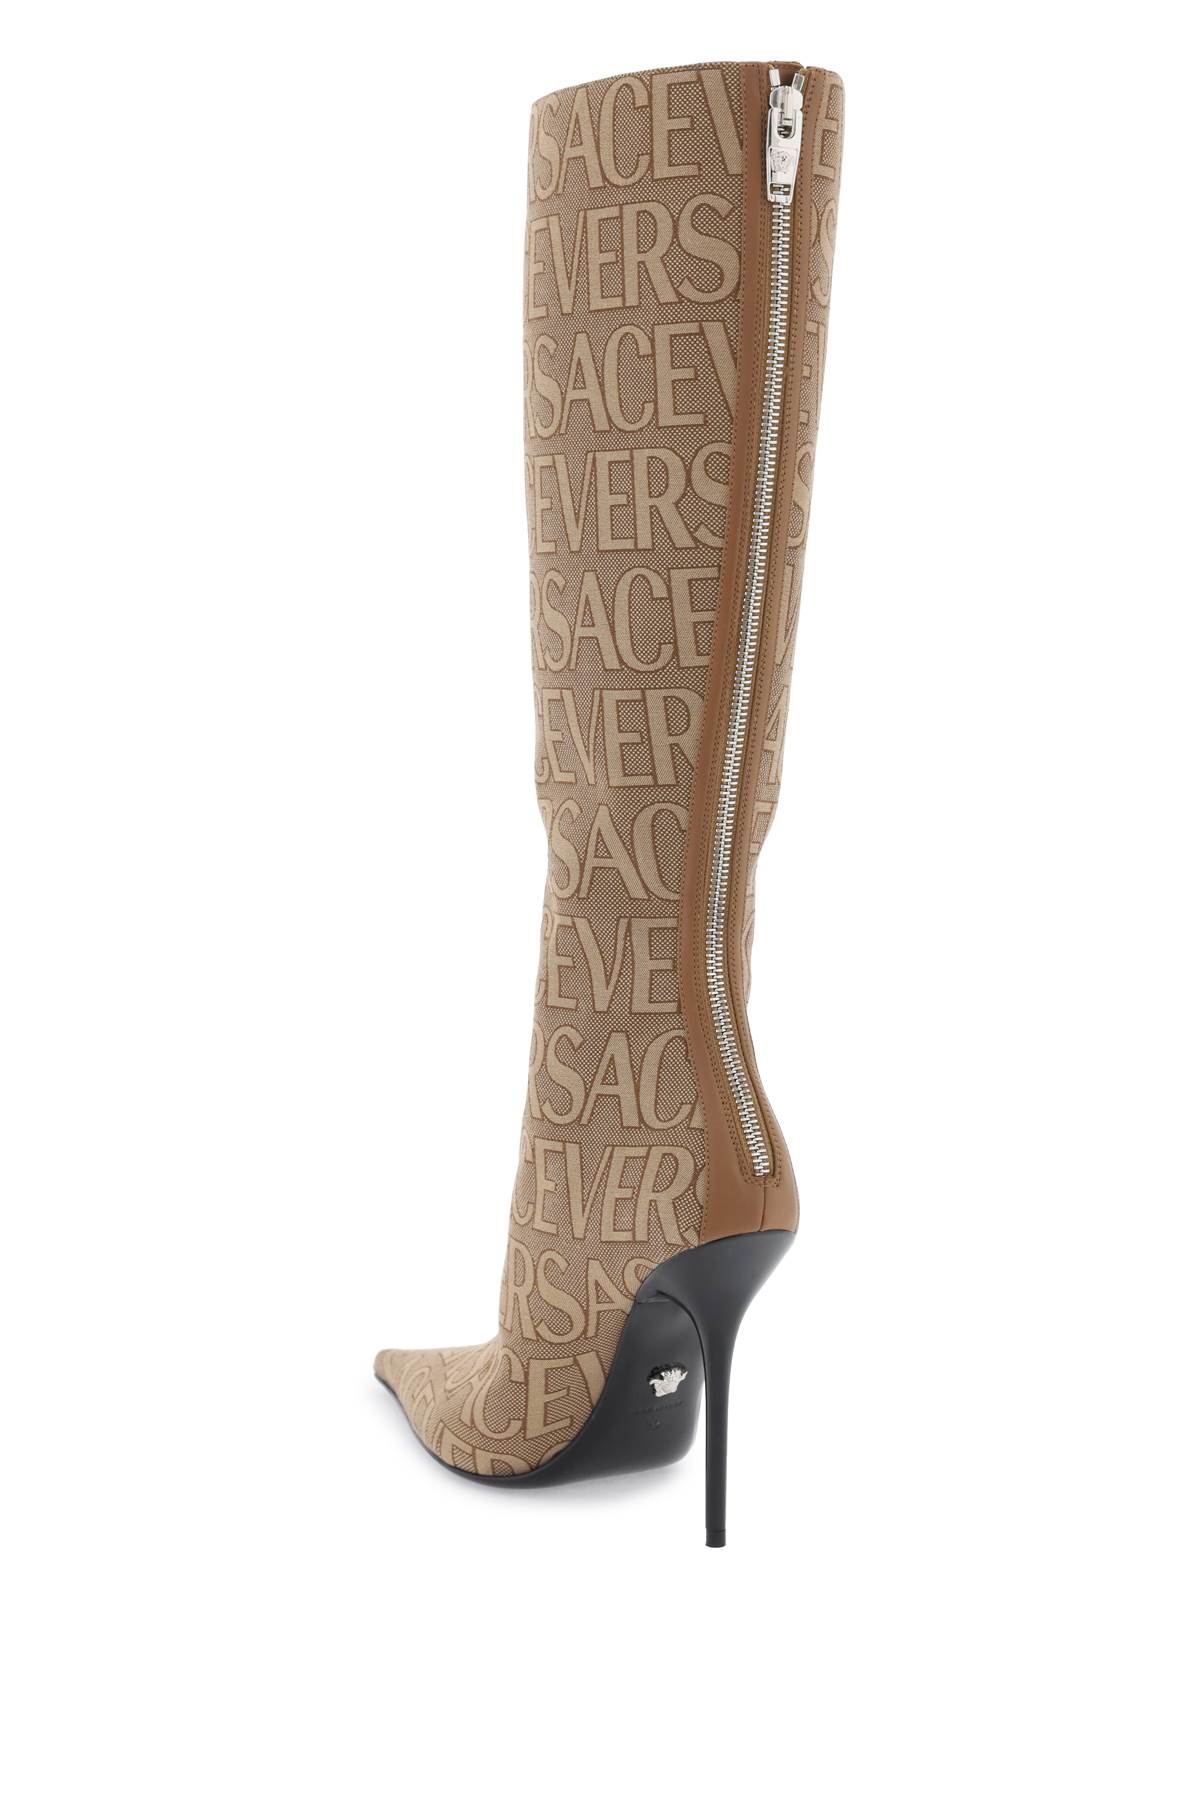 Shop Versace Allover Boots In Beige Brown Palladium (beige)